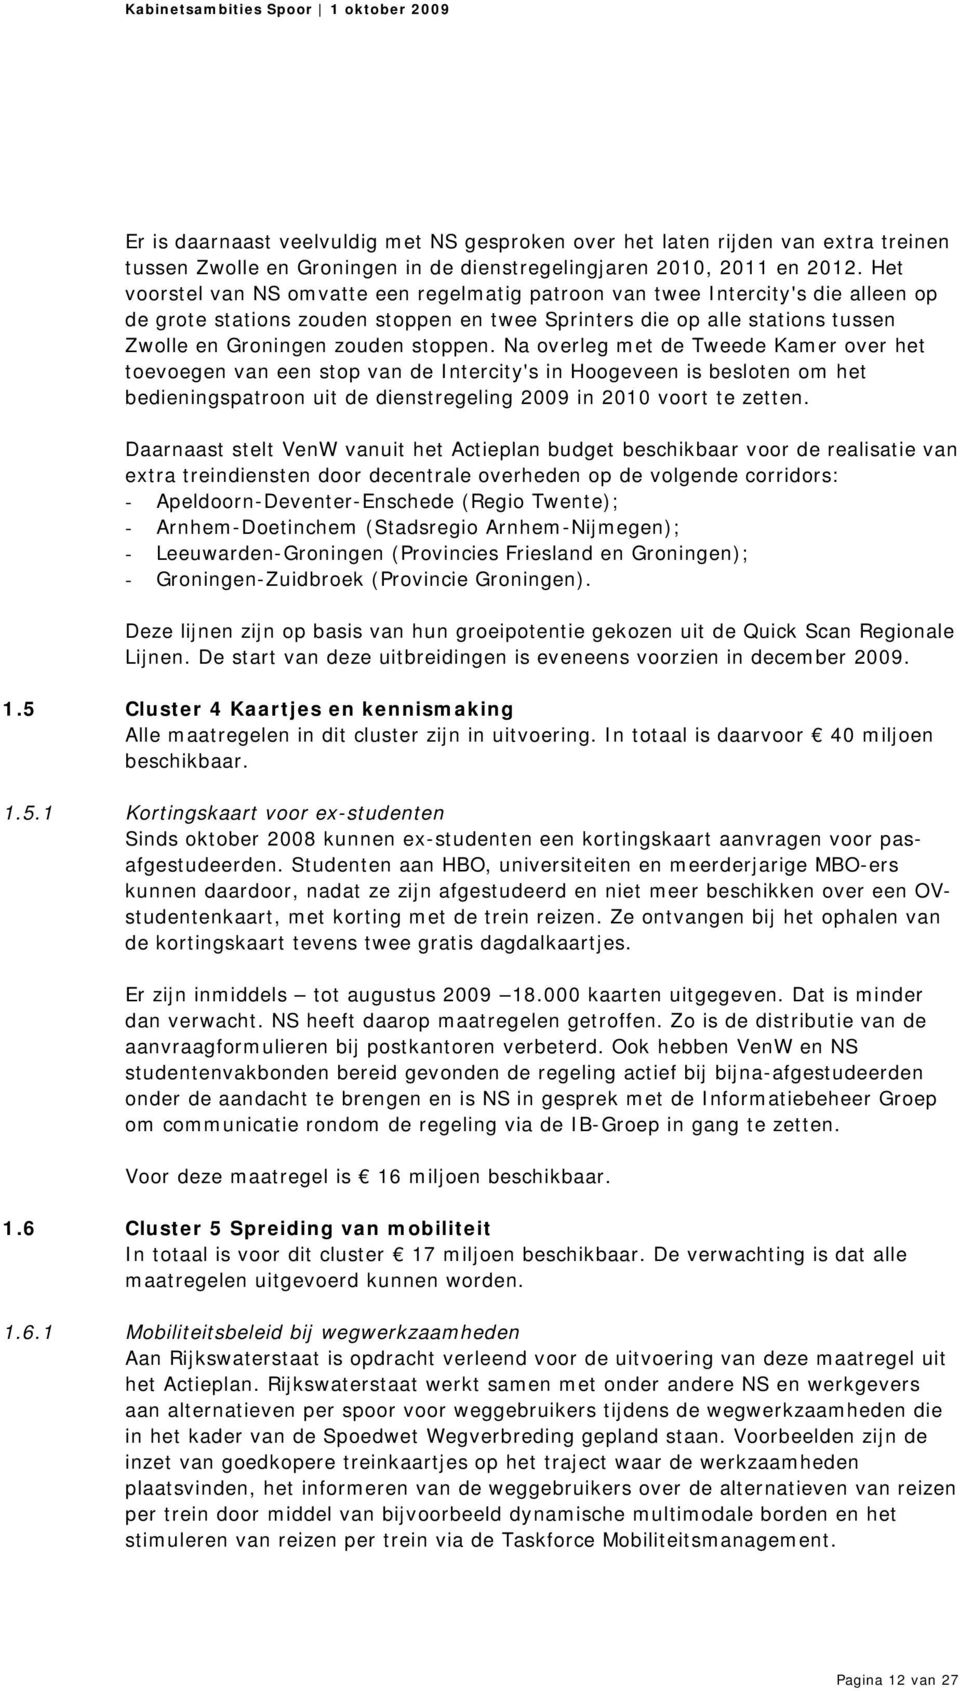 Na overleg met de Tweede Kamer over het toevoegen van een stop van de Intercity's in Hoogeveen is besloten om het bedieningspatroon uit de dienstregeling 2009 in 2010 voort te zetten.